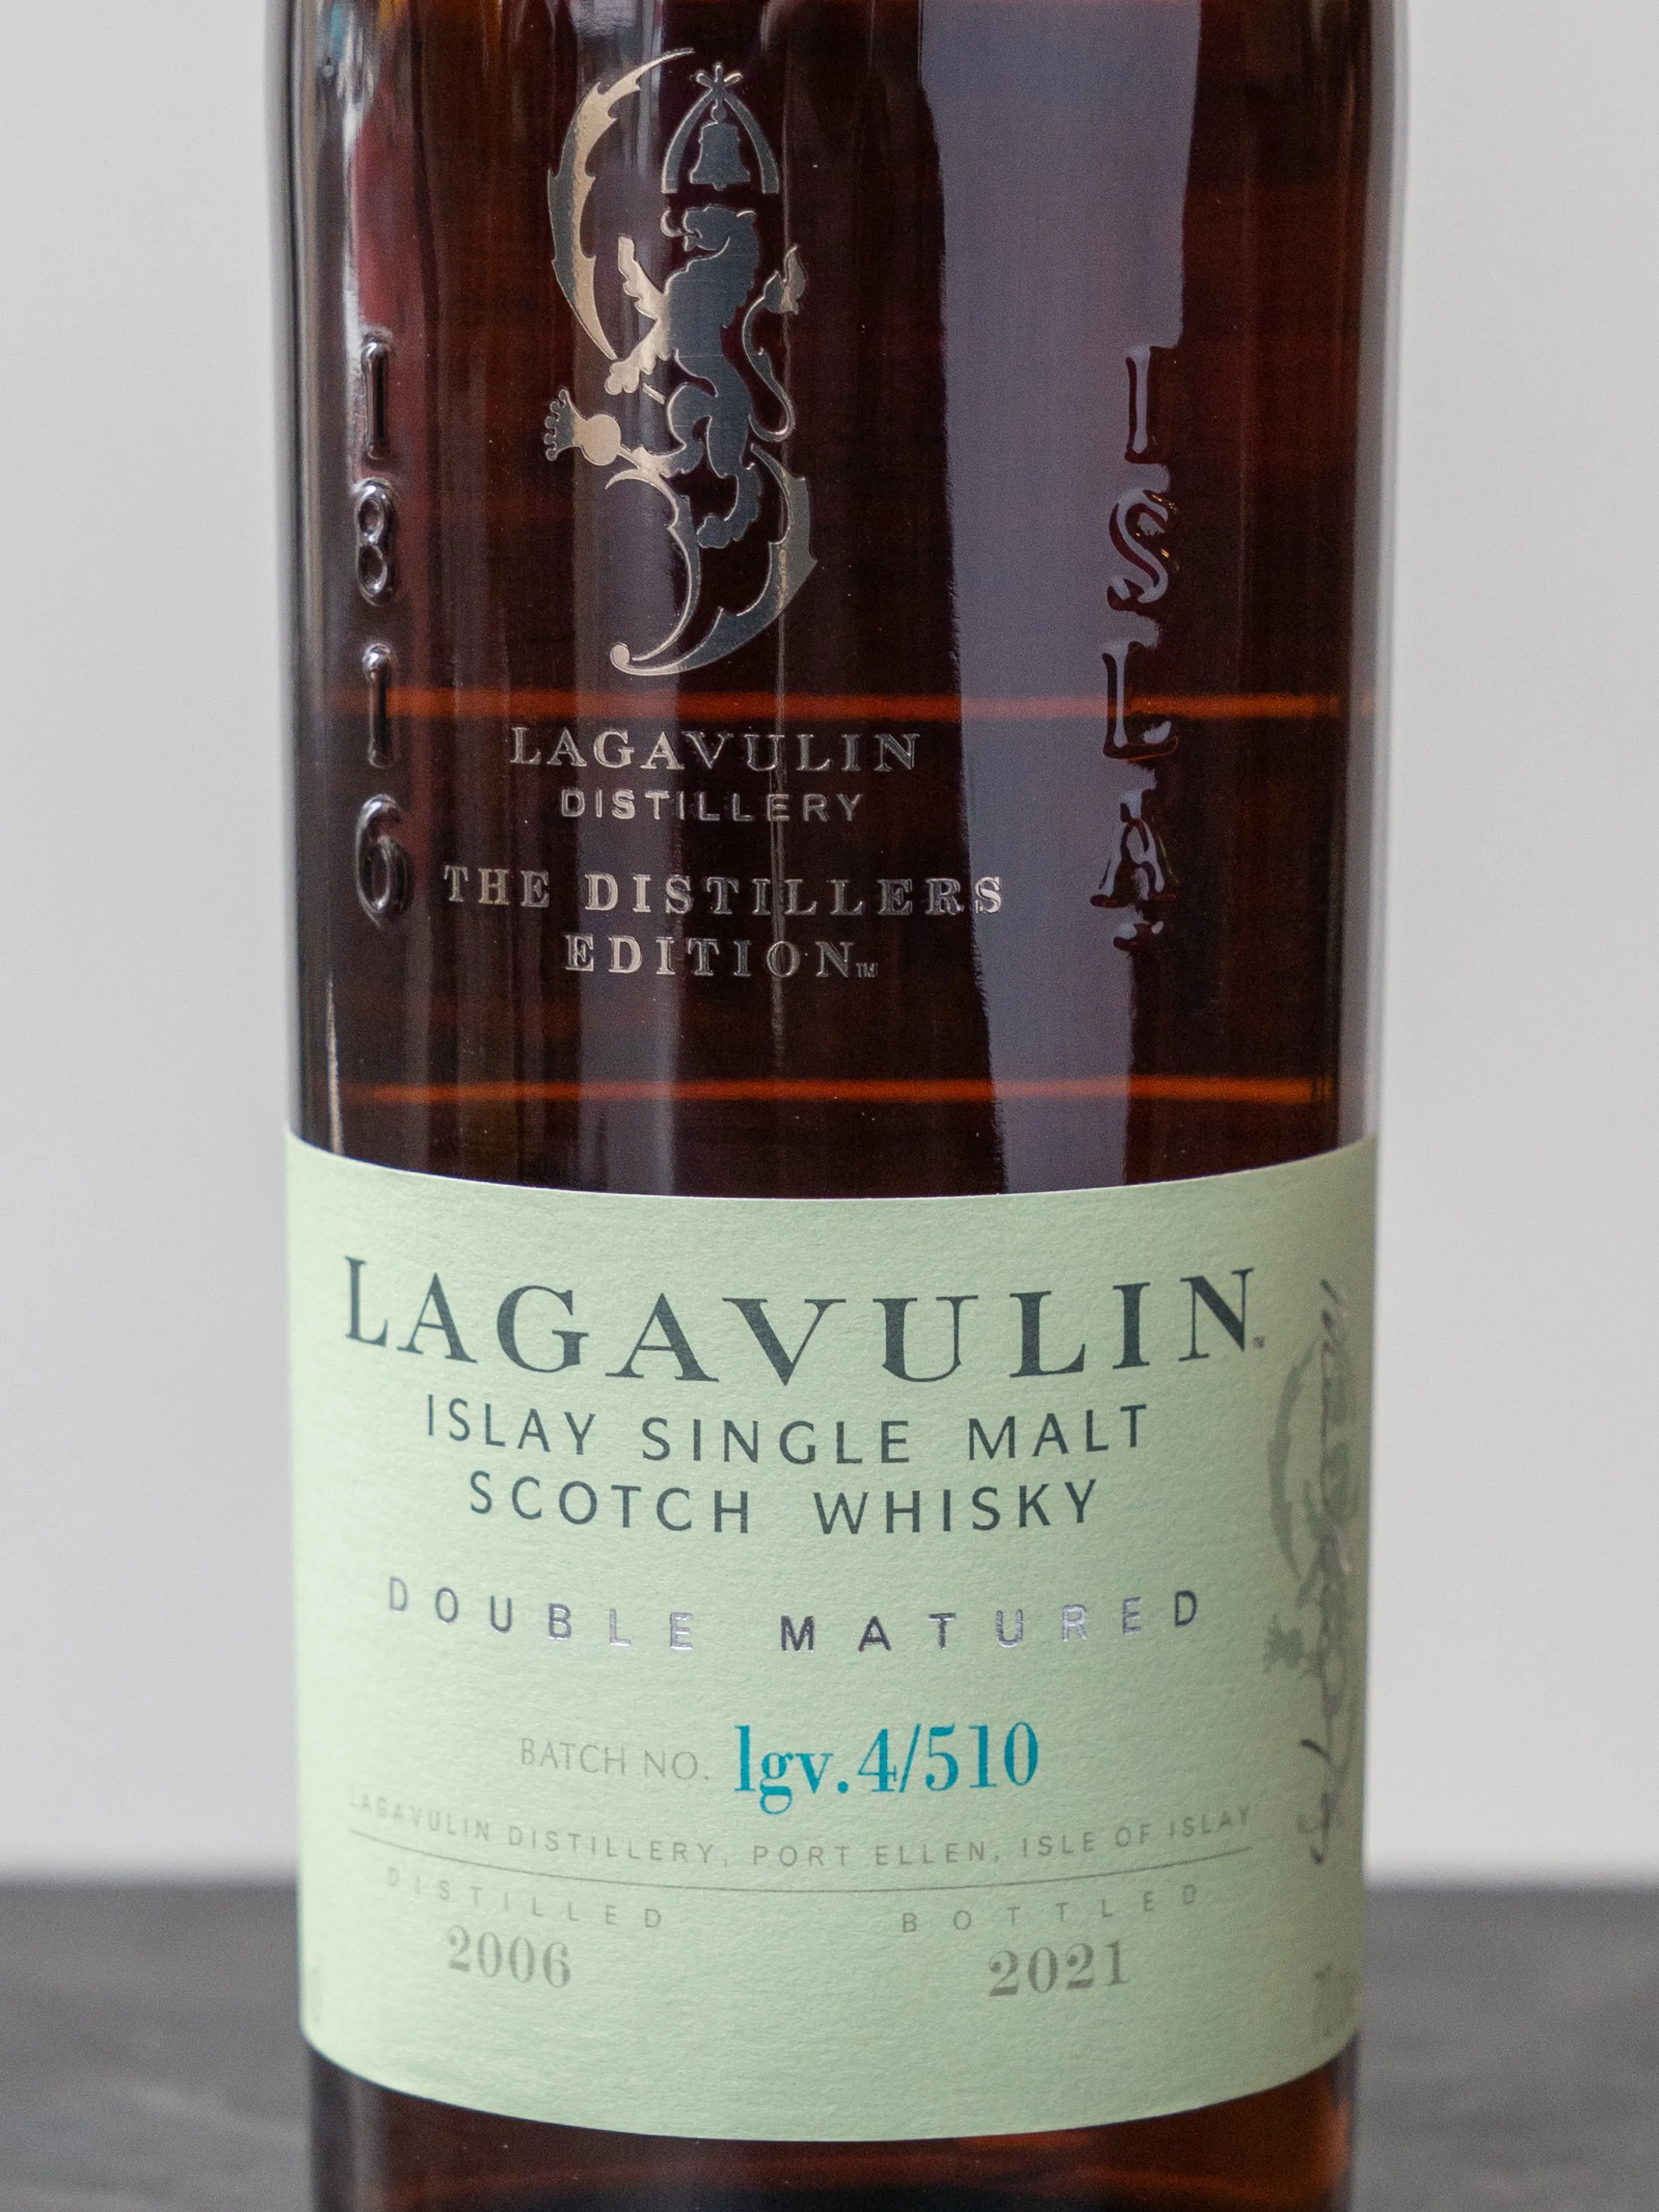 Виски Lagavulin 15 Years Distillers Edition 2021 / Лагавулин 15 лет Дистилерс Эдишин 2021